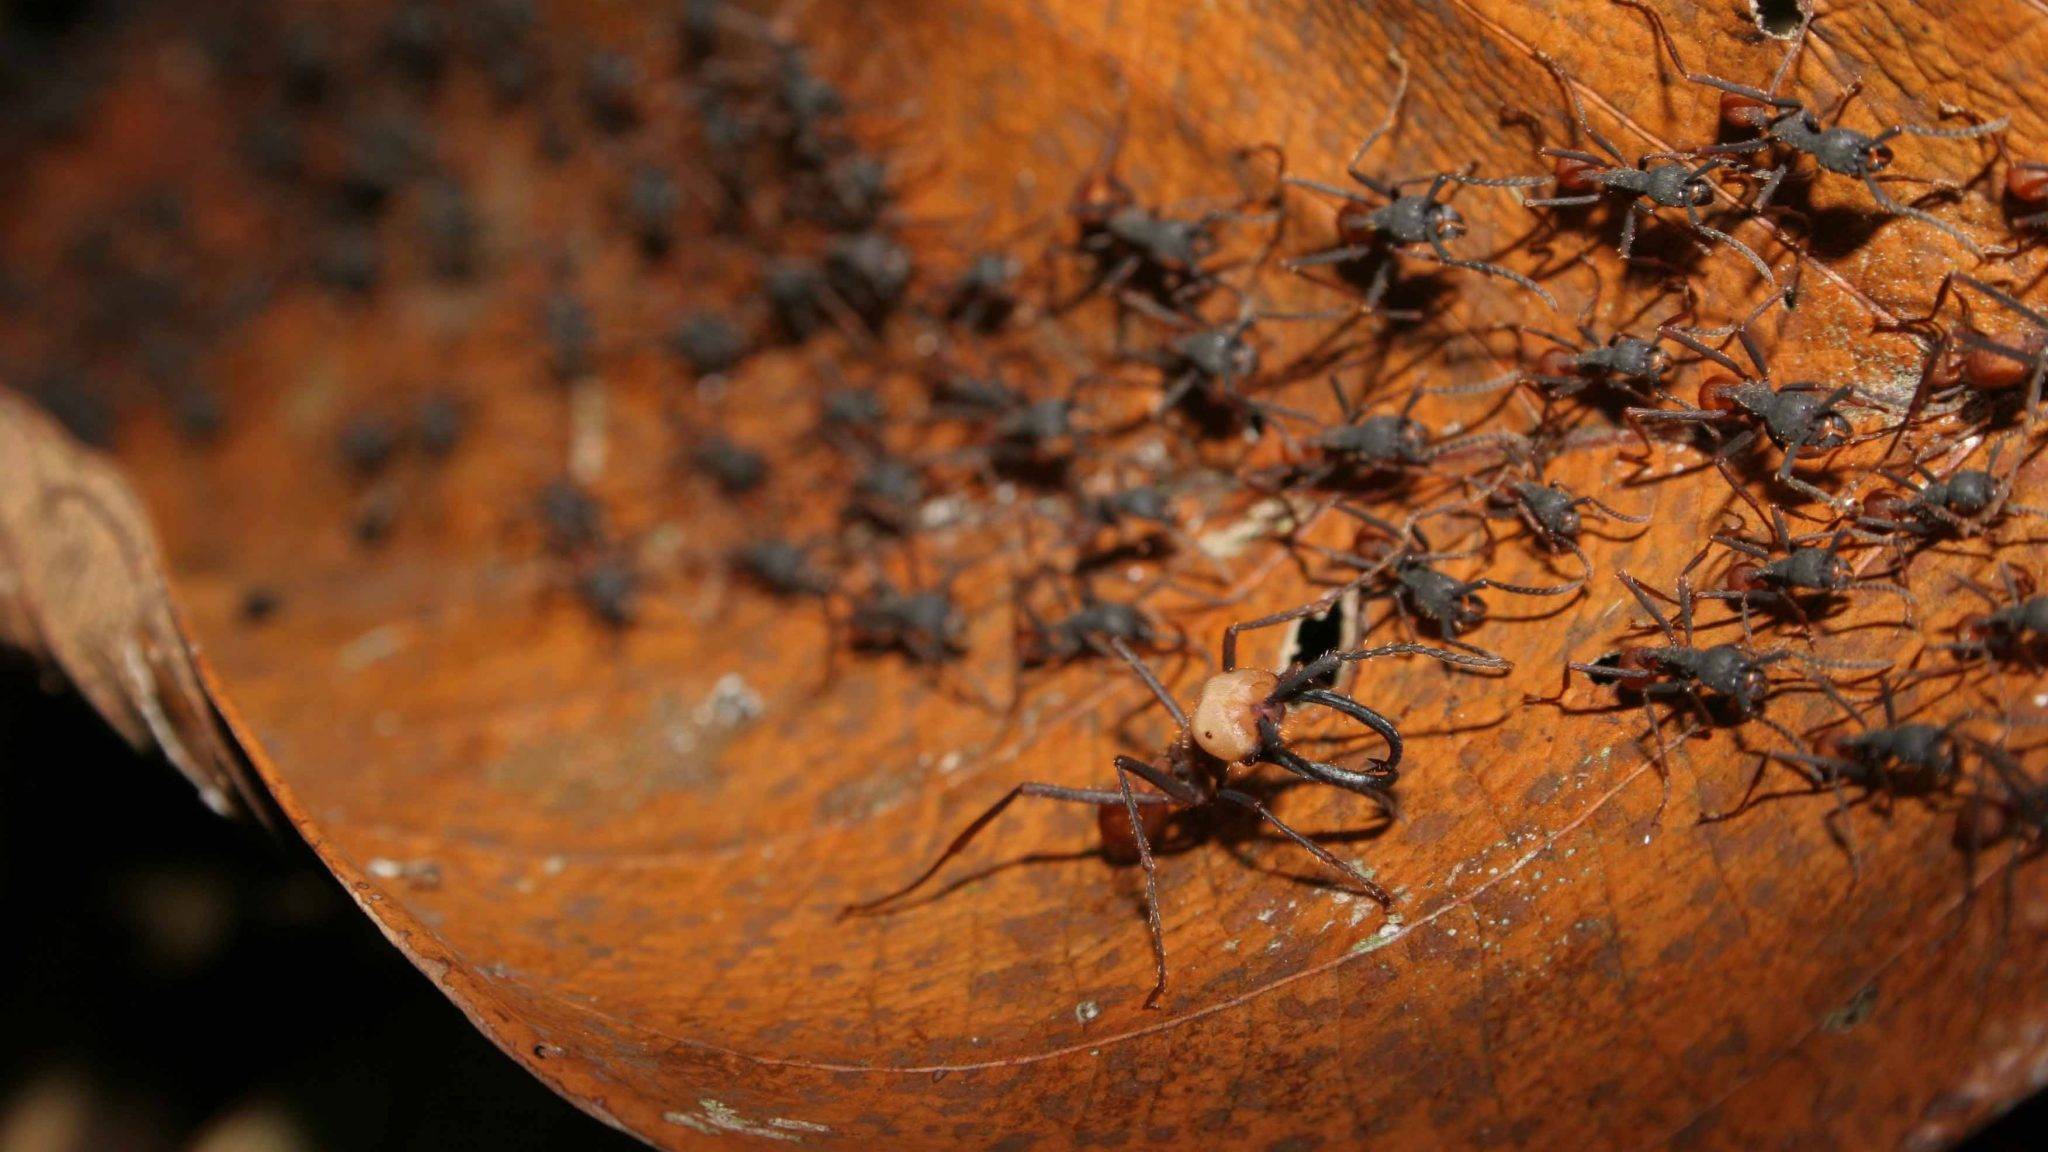 Виды муравьев и особенности жизни: как выглядят, фото, сколько живут и прочее